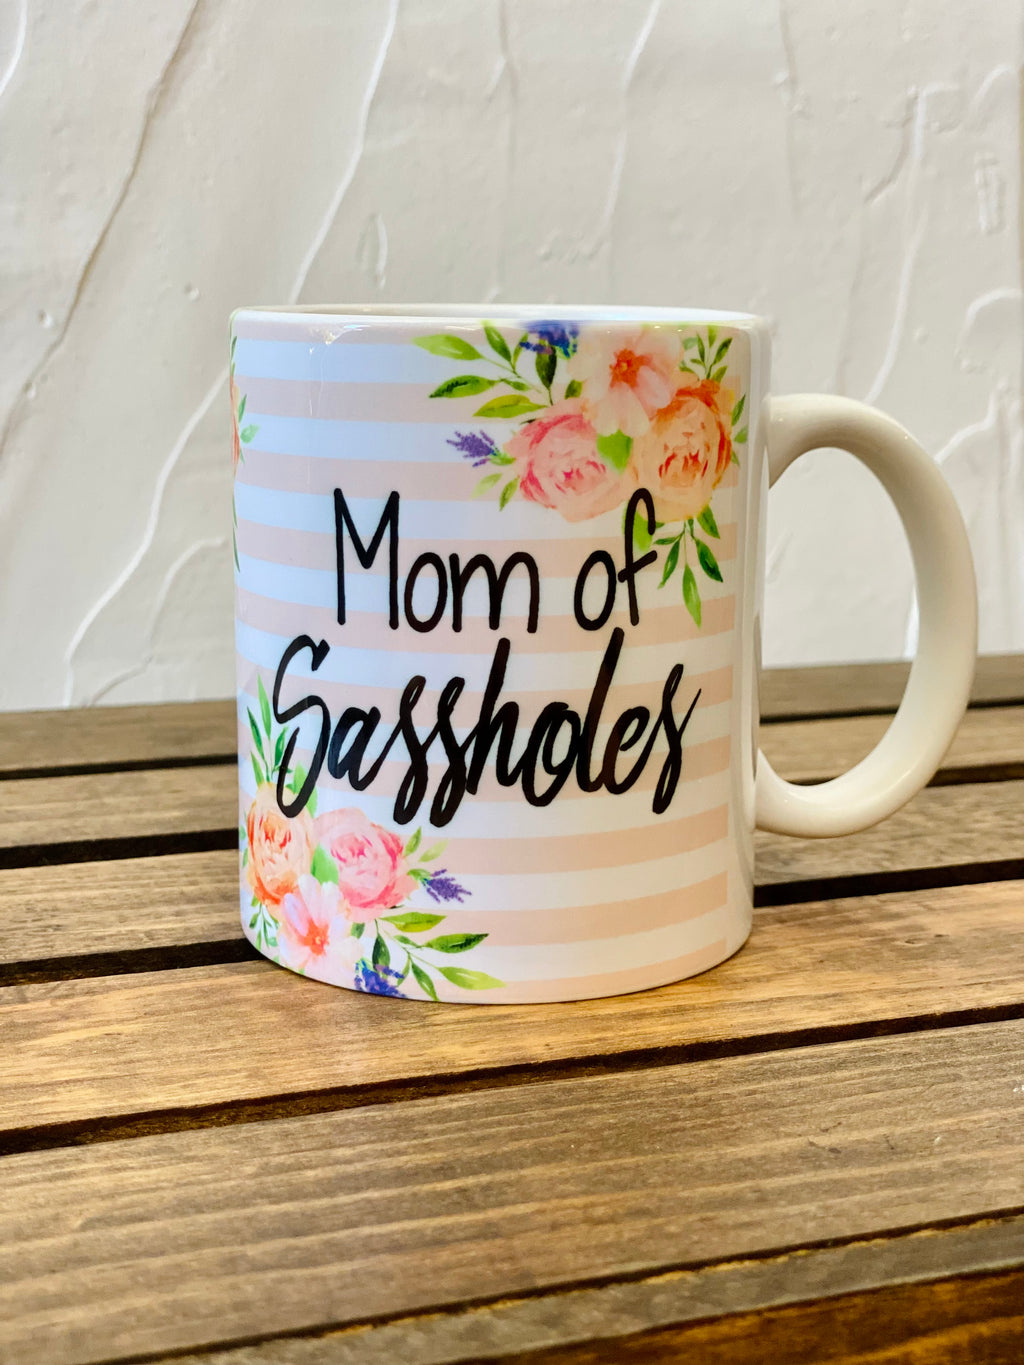 Mom Of Sassholes Mug - The Sassy Owl Boutique